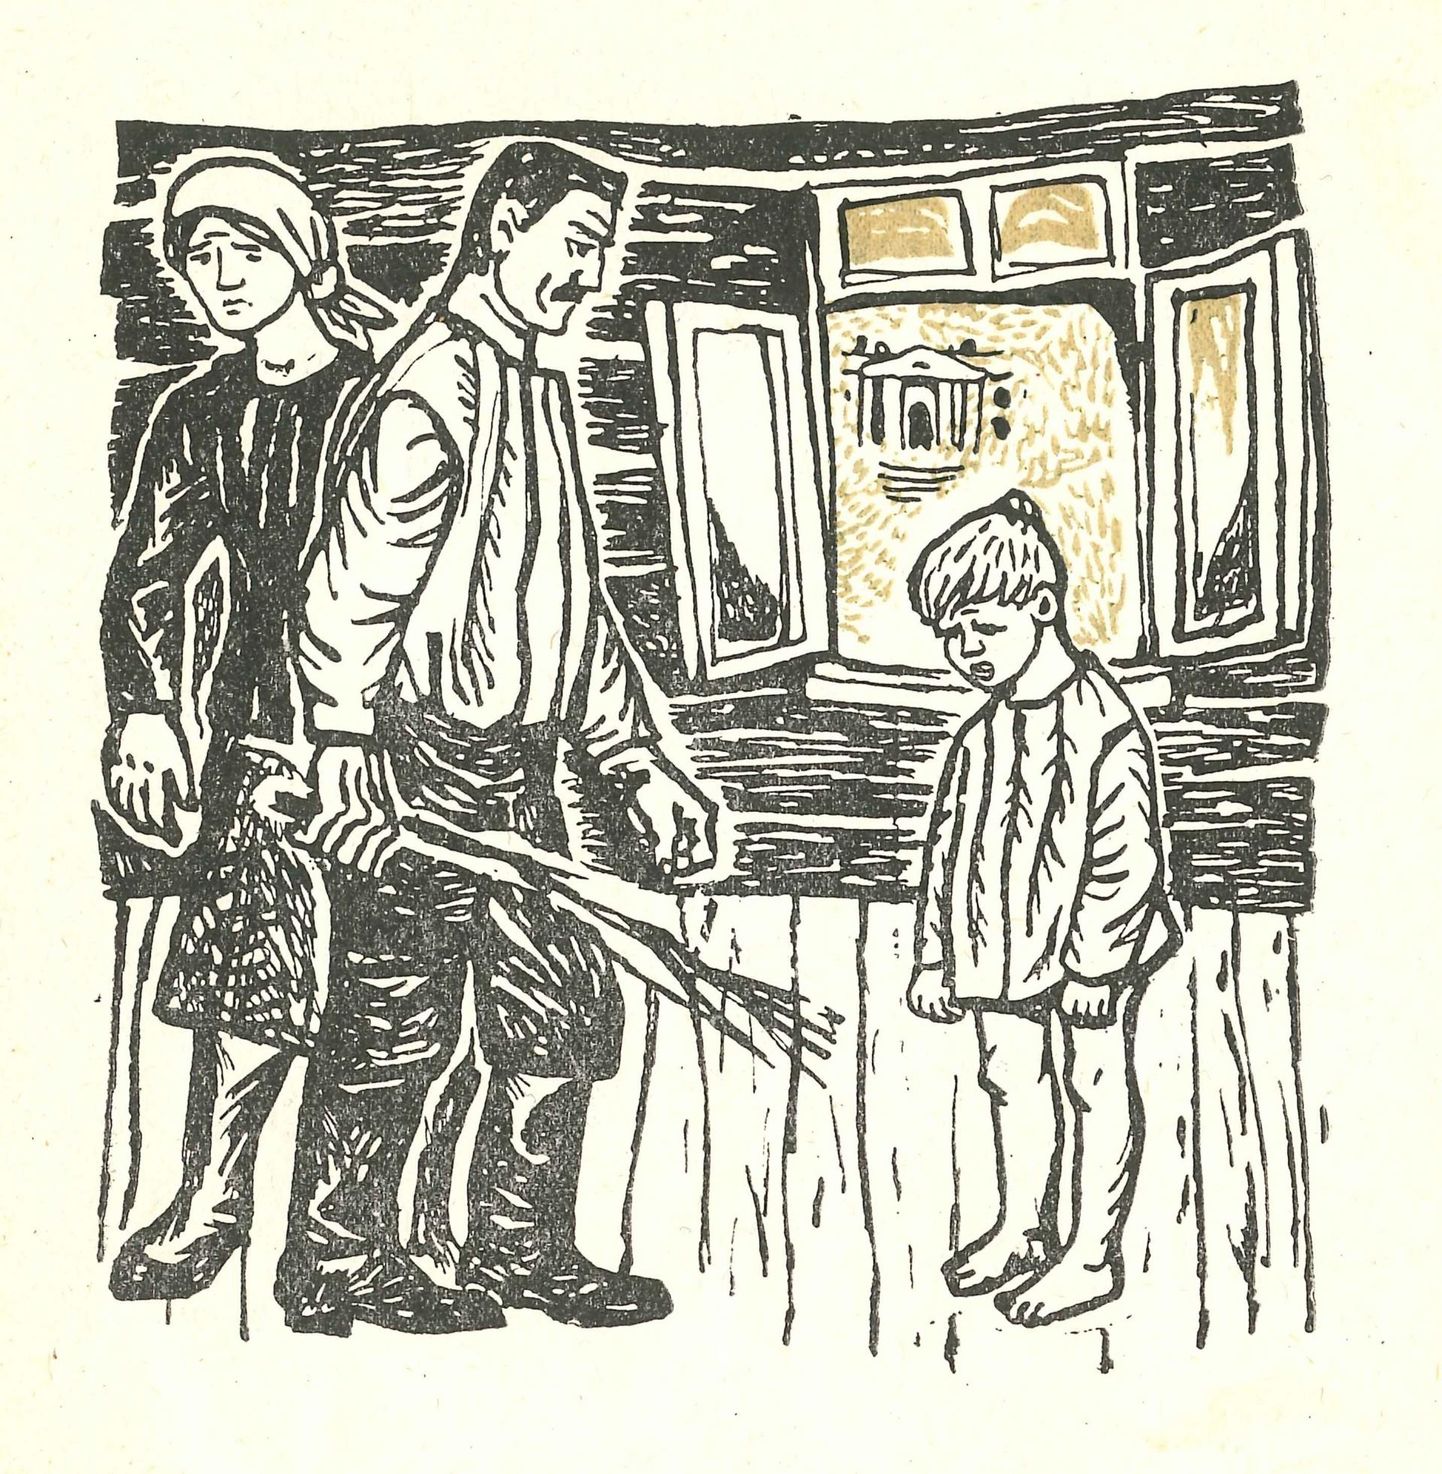 Eduard Vilde «Minu esimesed triibulised» (1964), Peeter Ulase illustratsioon.